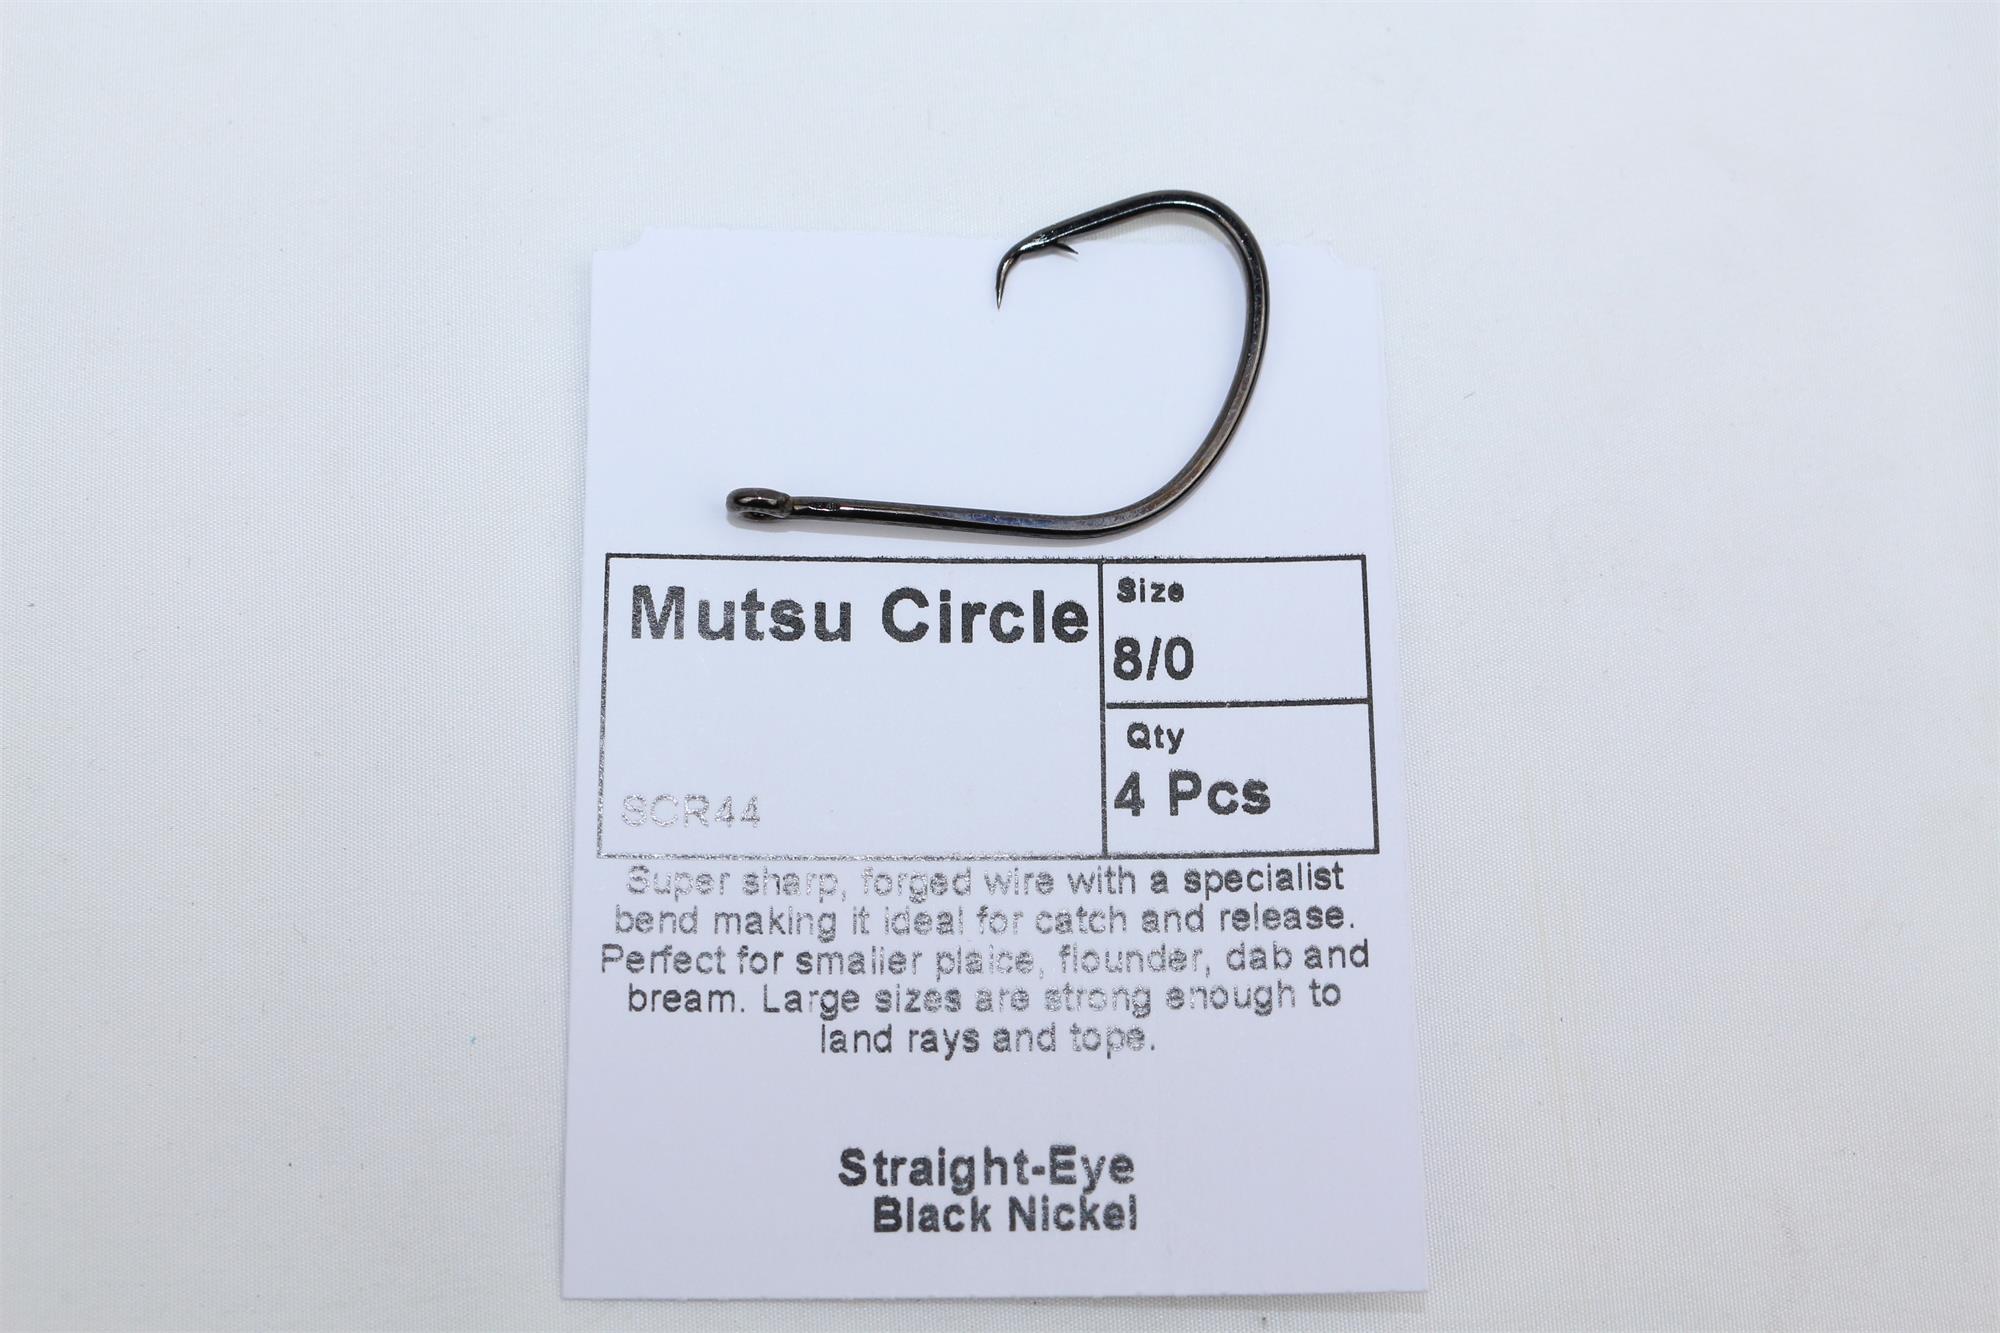 Cox & Rawle Mutsu Circle Hooks